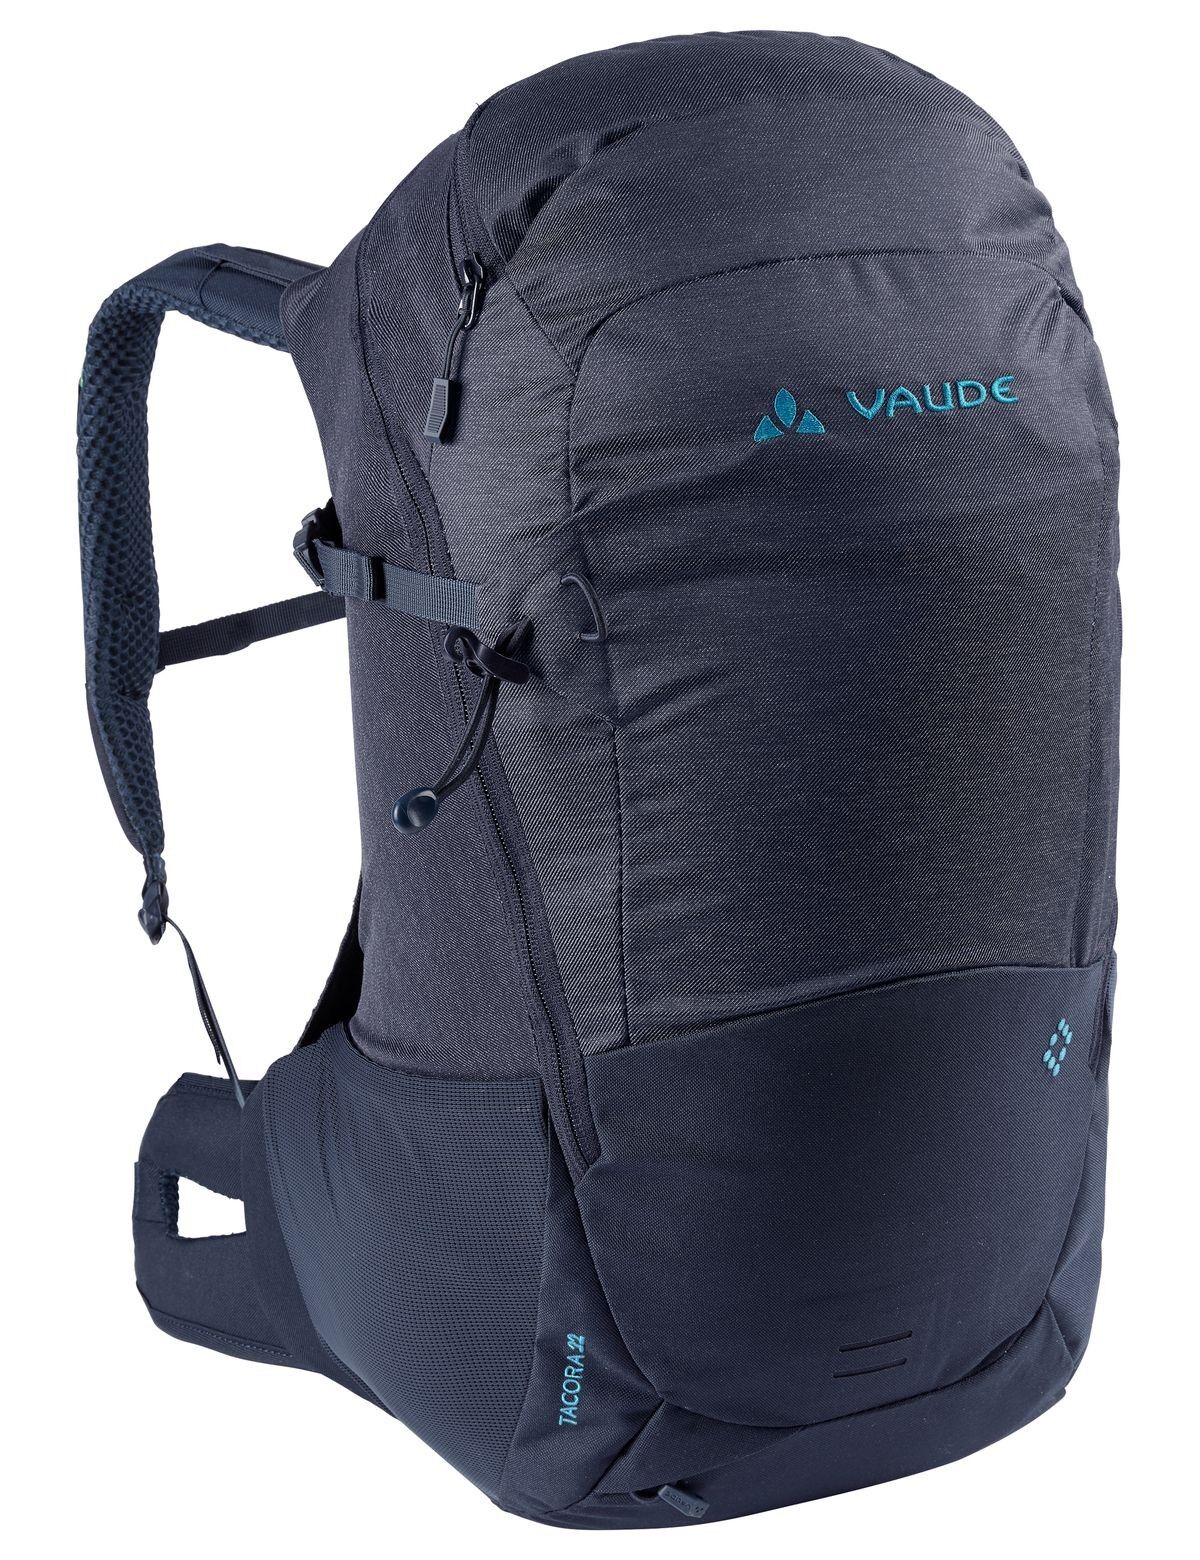 Vaude Tacora 22 - Walking backpack - WoMen's